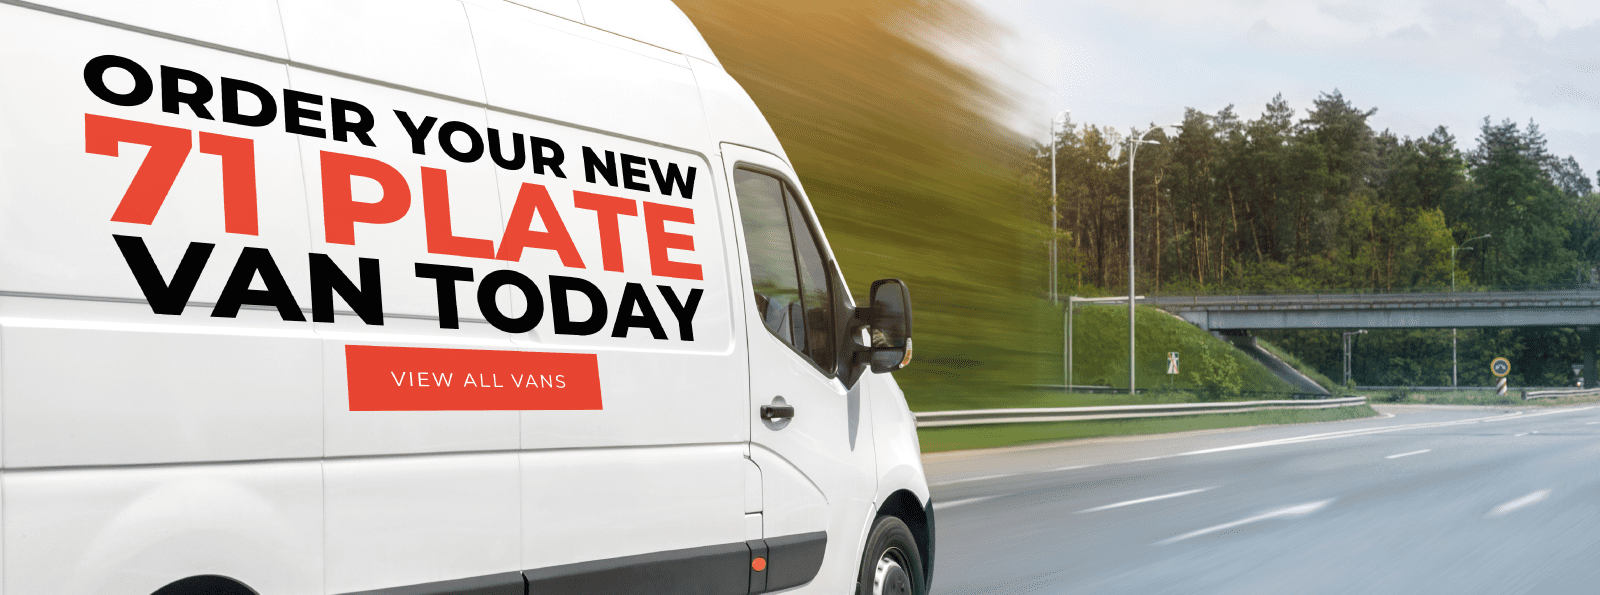 bekymring 945 engagement Cheap New Vans For Sale | Best New Van Deals UK | Van Discount